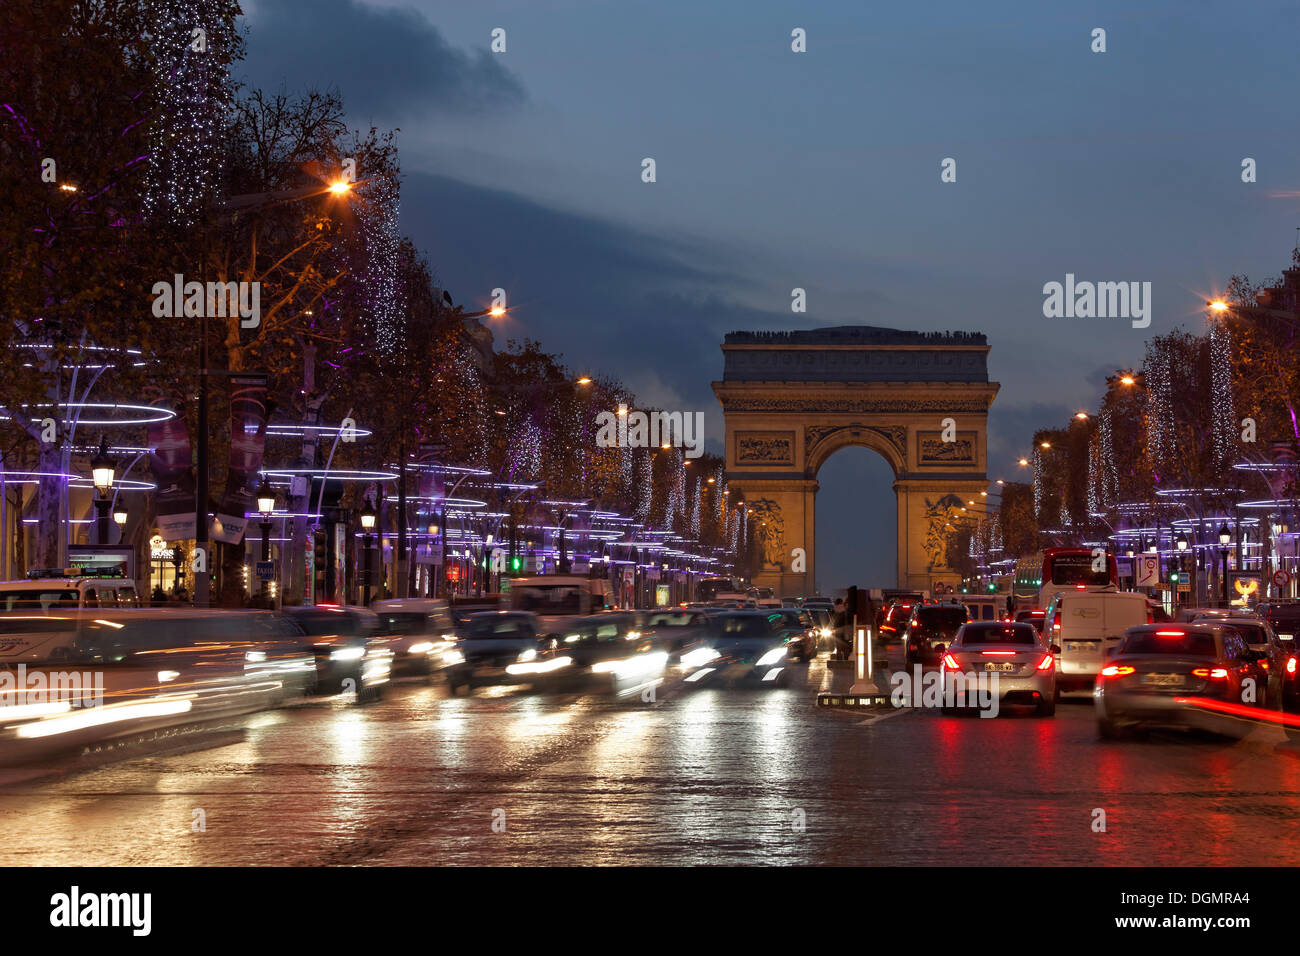 Avenue des Champs-Elysees with the Arc de Triomphe, Christmas lights, evening mood, Paris, Ile-de-France, France Stock Photo